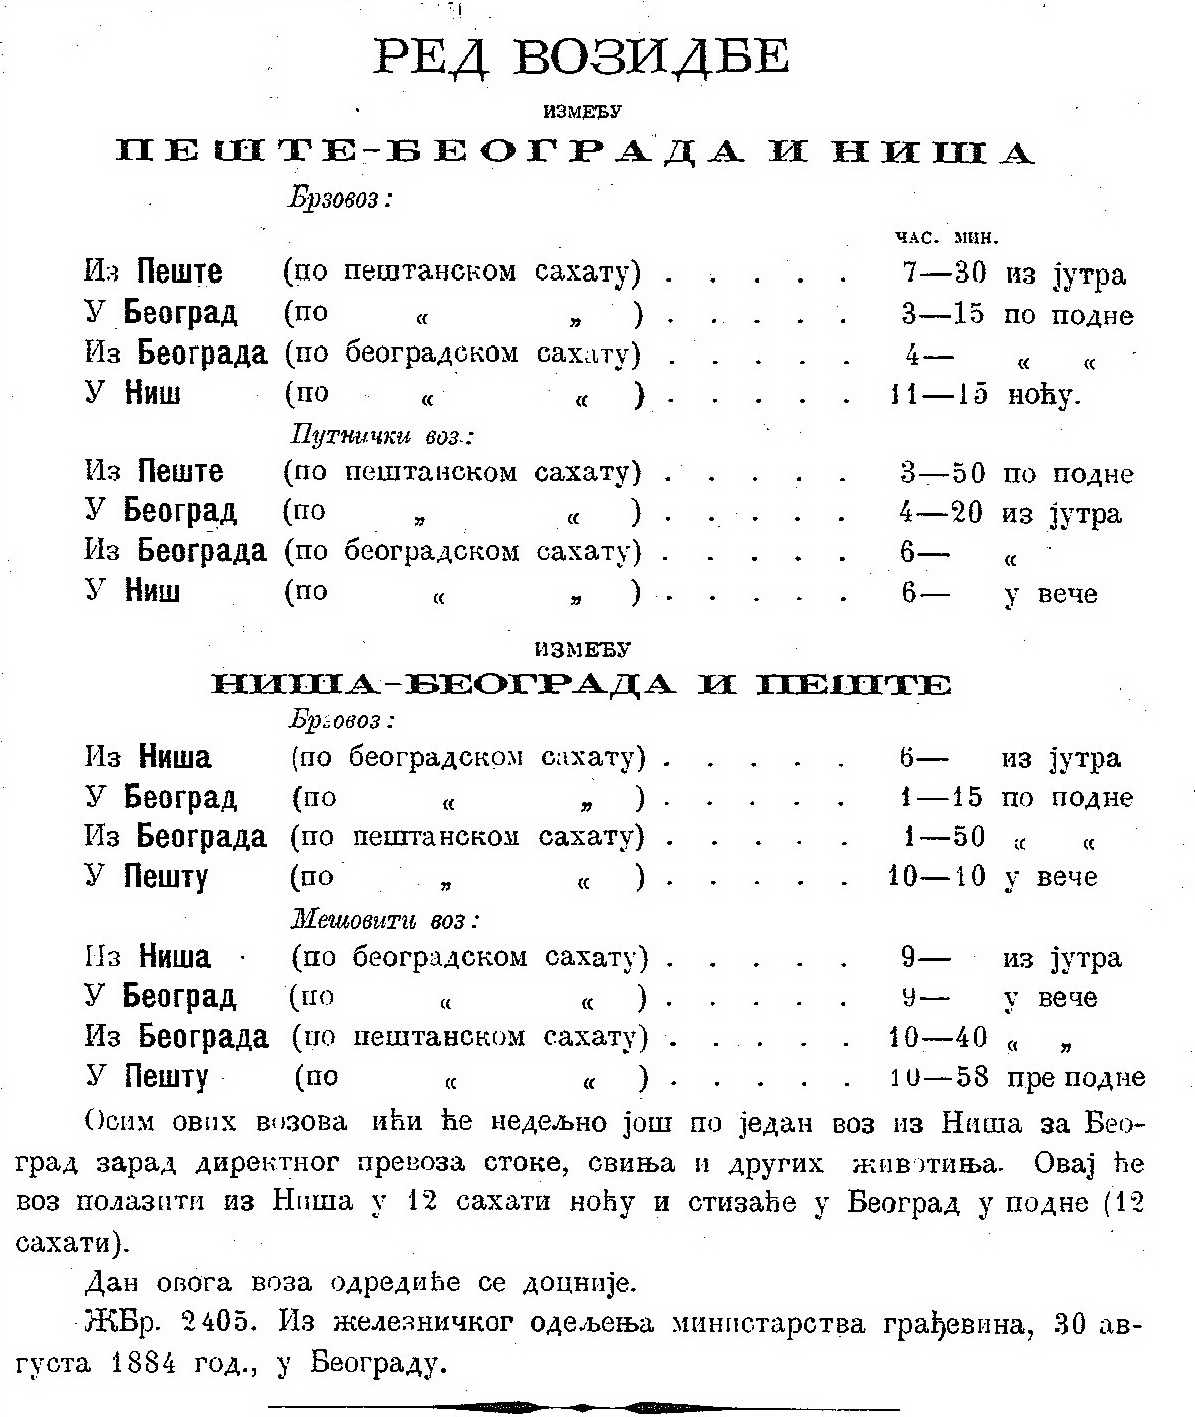 10-I-4a-Red-voznje-Srpske-novineBeograd-1.-septembar-1884.-godine-fond-Narodne-biblioteke-SrbijeP_2588_1884_09_01_003.jpg